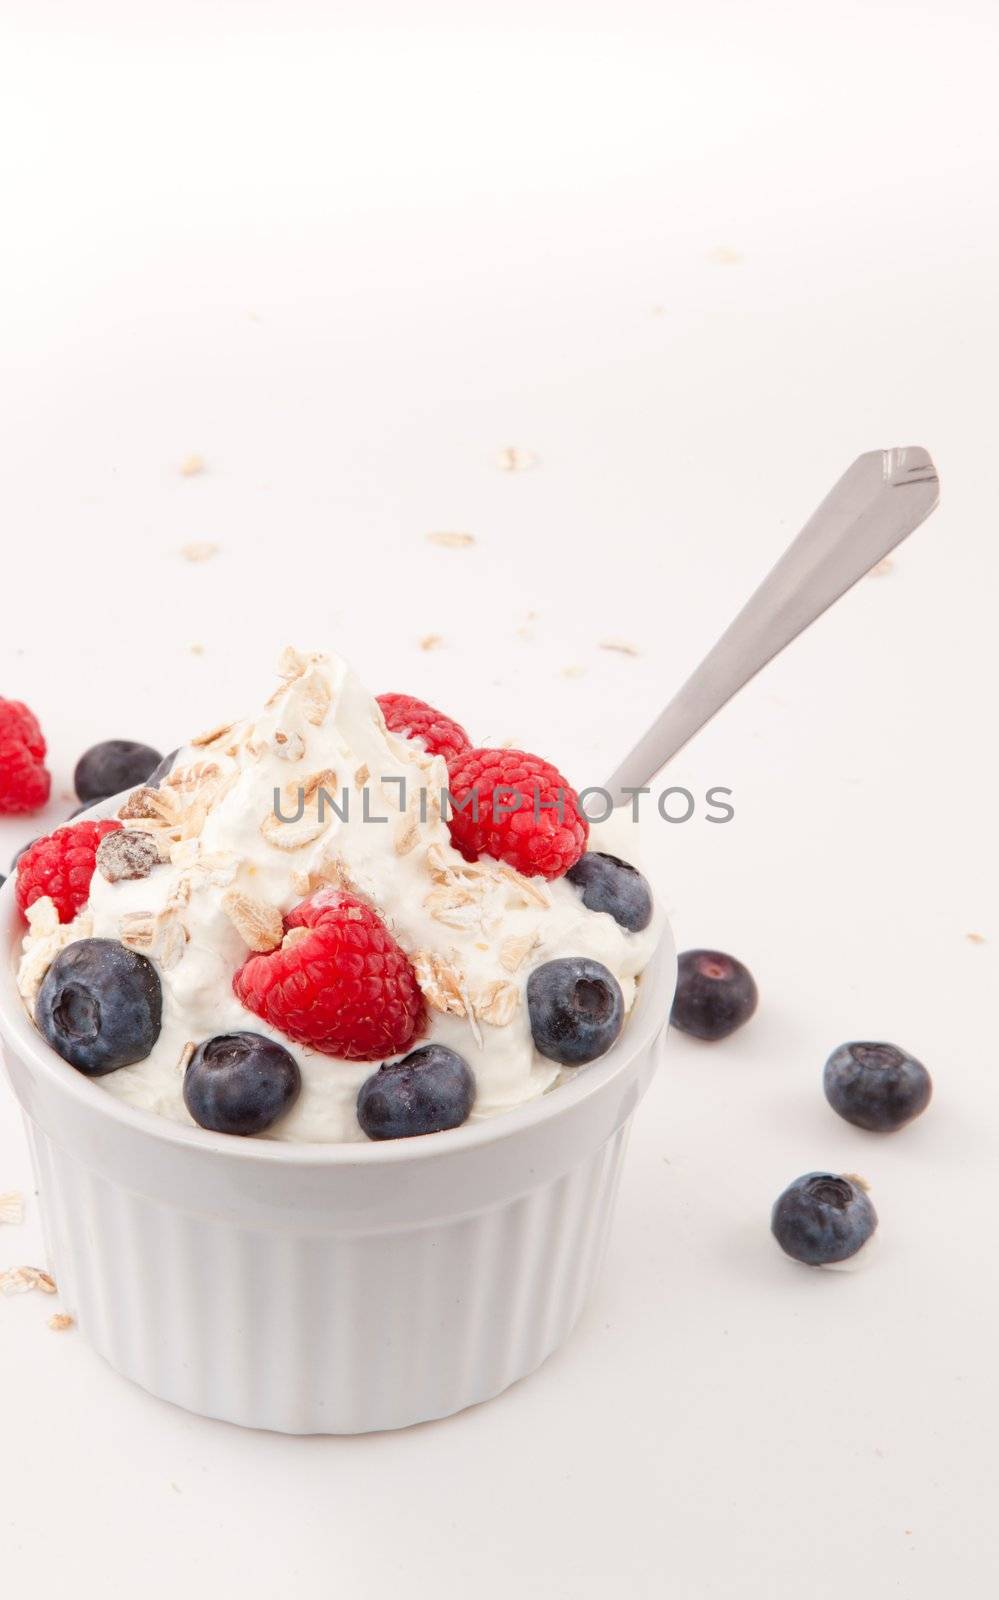 Healthy dessert with berries by Wavebreakmedia